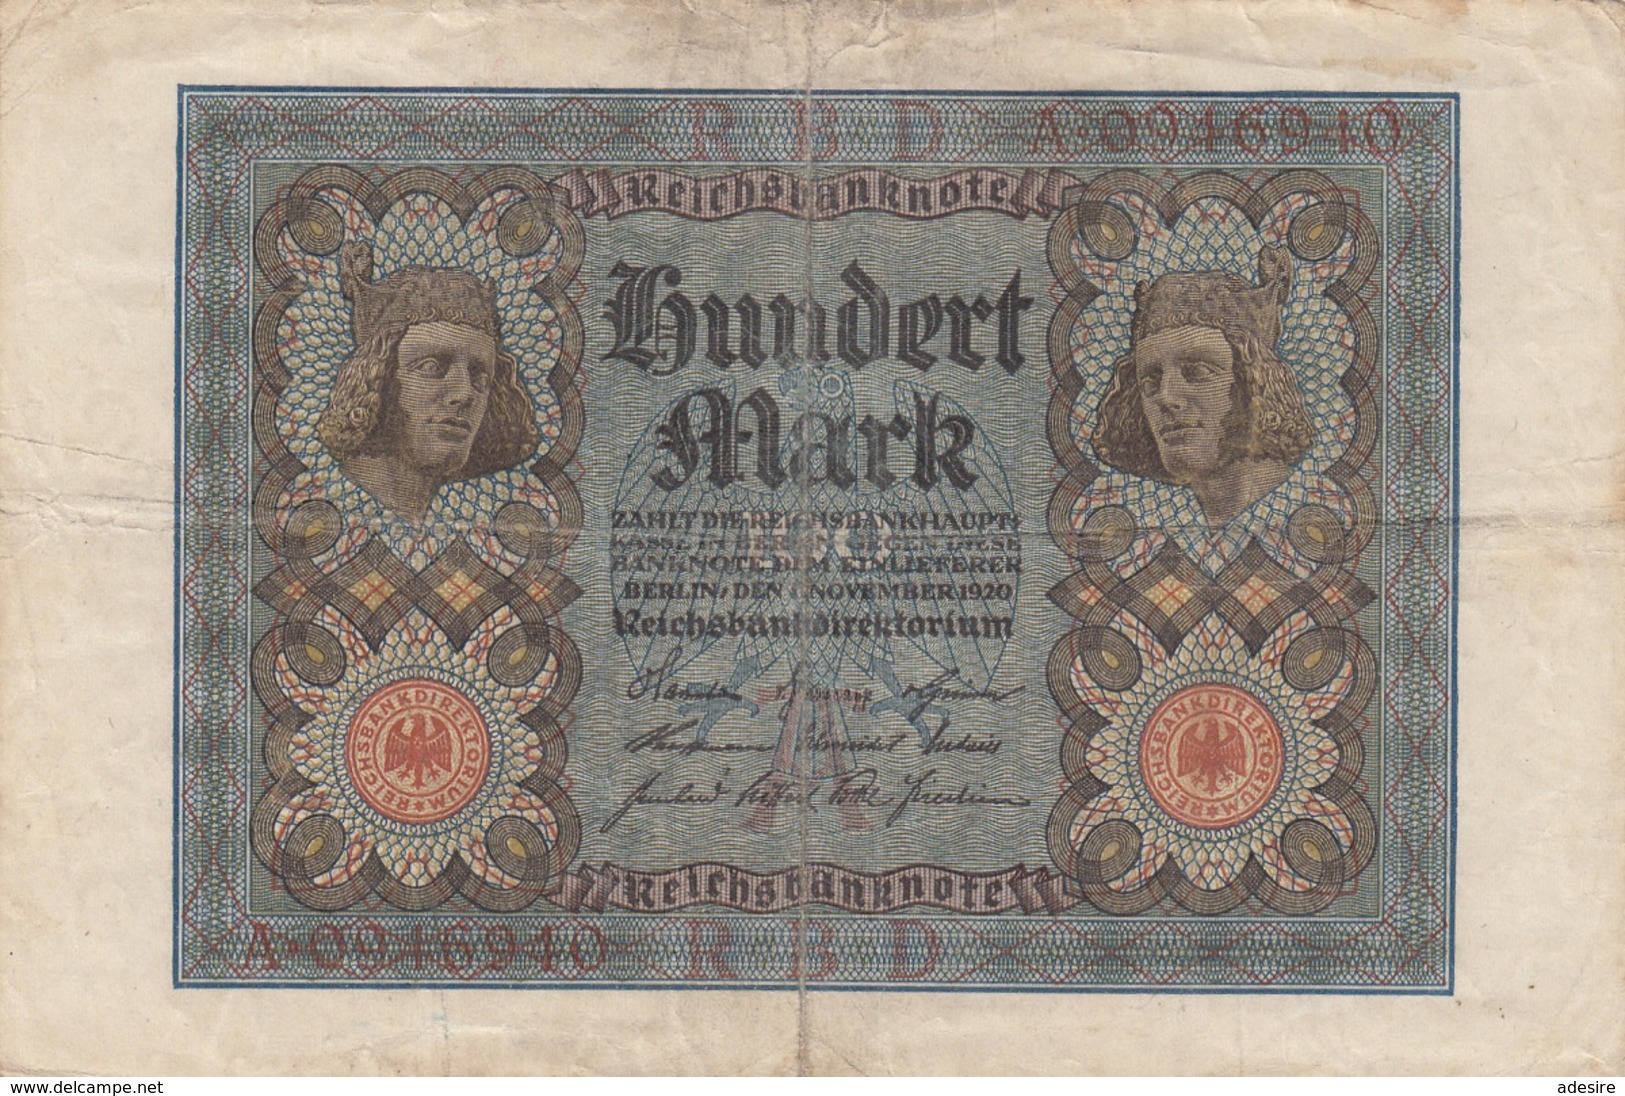 100 MARK Reichsbanknote 1920, Umlaufschein, Gebrauchsspuren, Gefaltet - 100 Mark